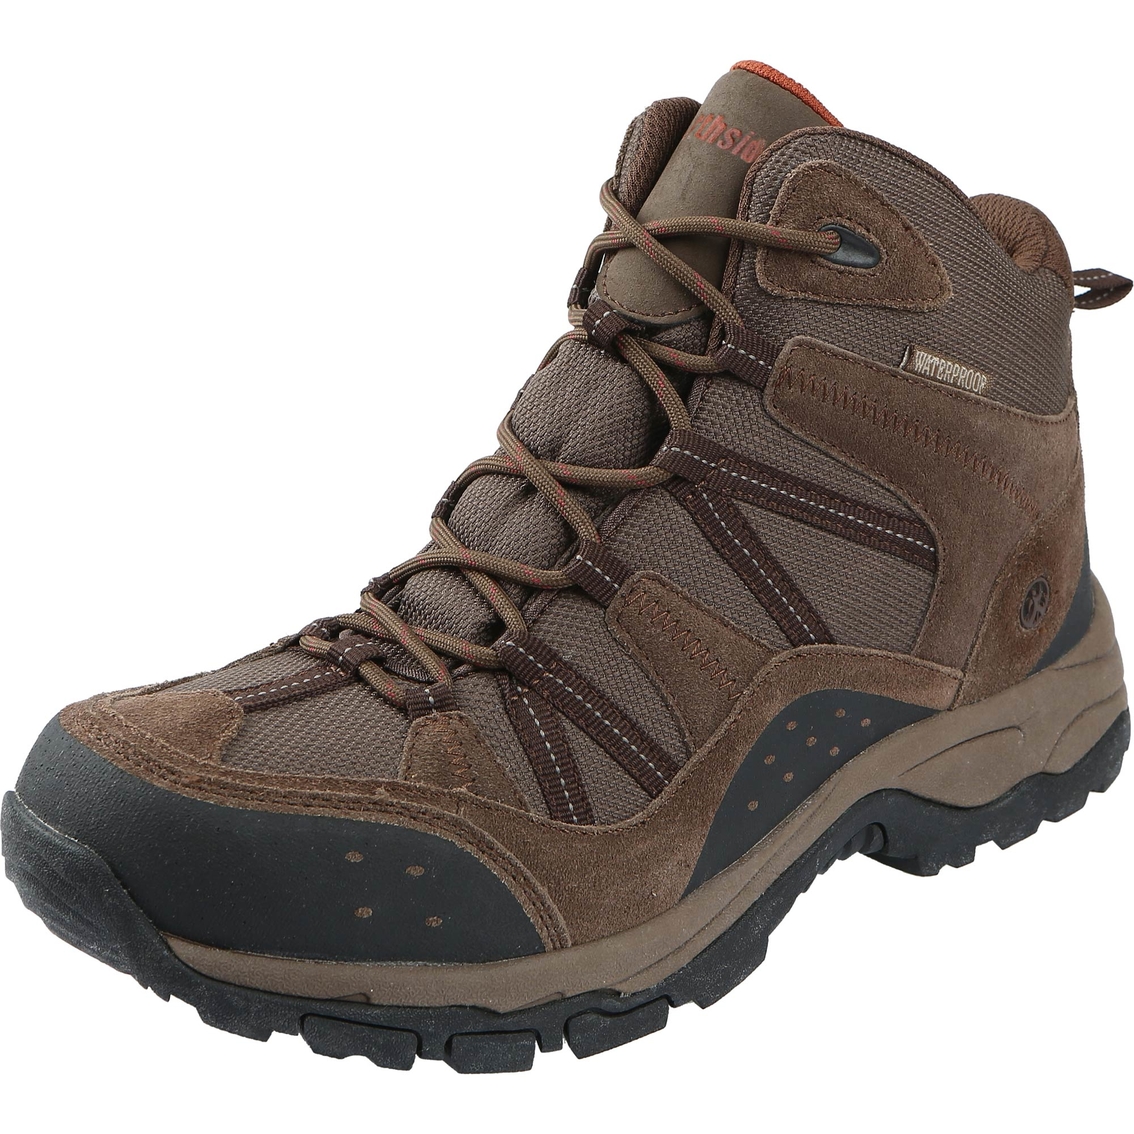 Northside Men's Freemont Waterproof Hiking Boot | Work & Outdoor ...